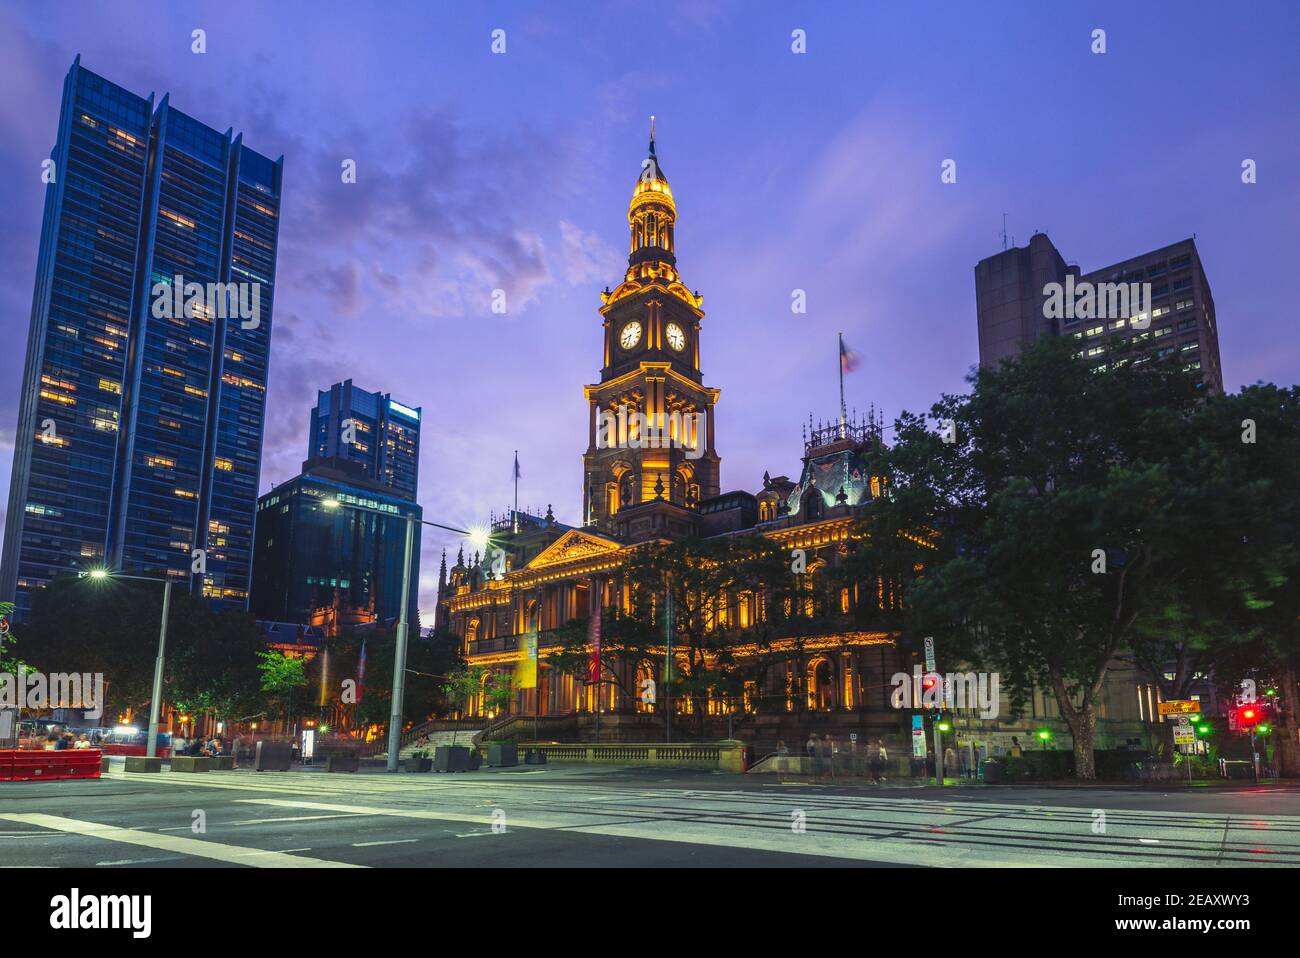 Hôtel de ville de Sydney dans le quartier central des affaires de sydney, australie Banque D'Images